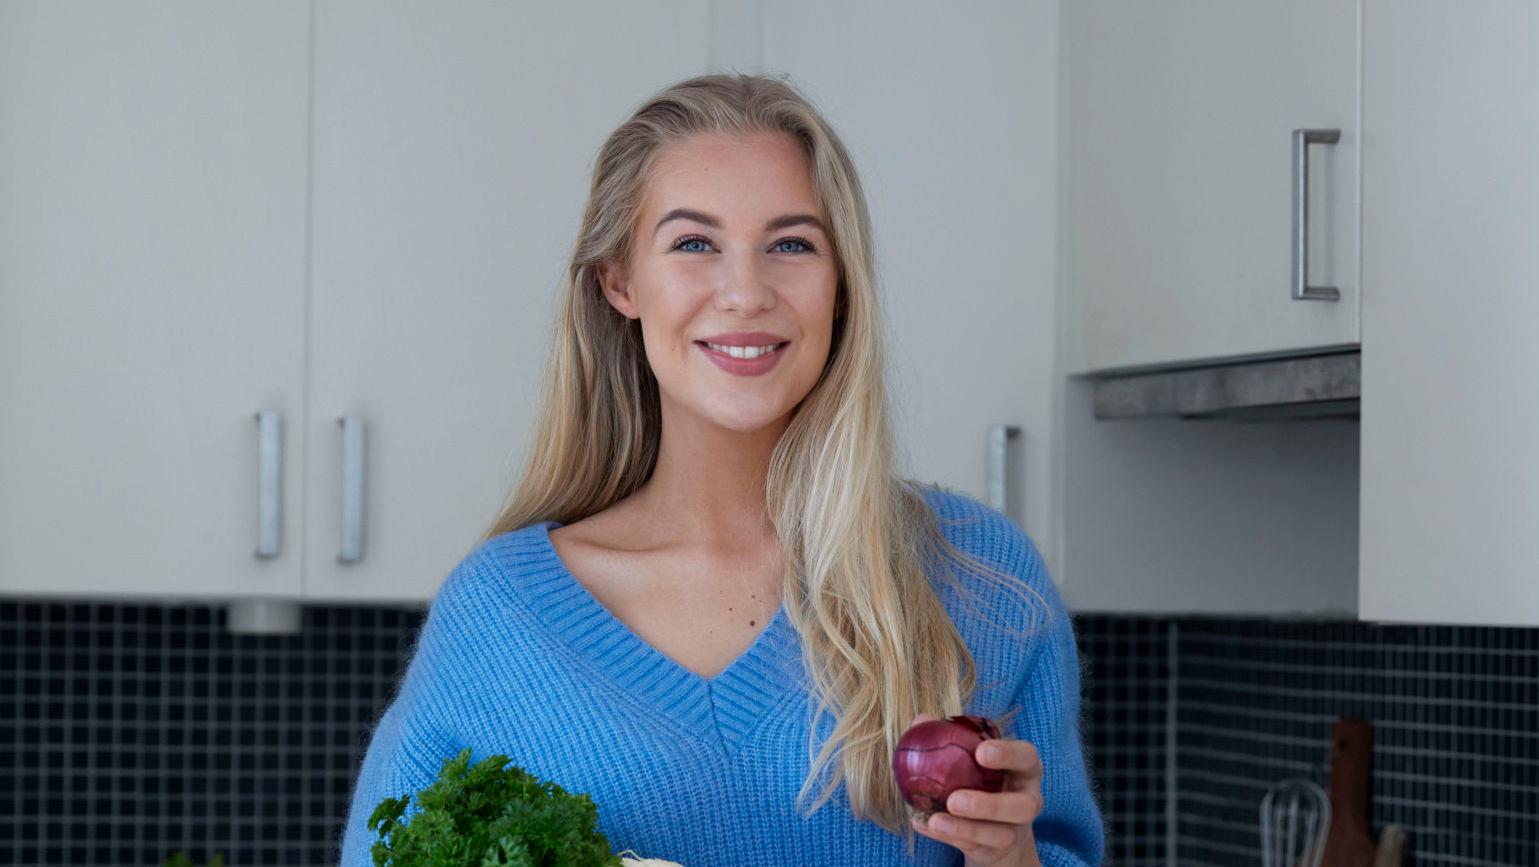 SUNT OG GODT, FOR FÅ KRONER: Ifølge Karen Elene Thorsen kan du spise sunn og god mat for 300-400 kroner i uken. Foto: Veslemøy Vråskar